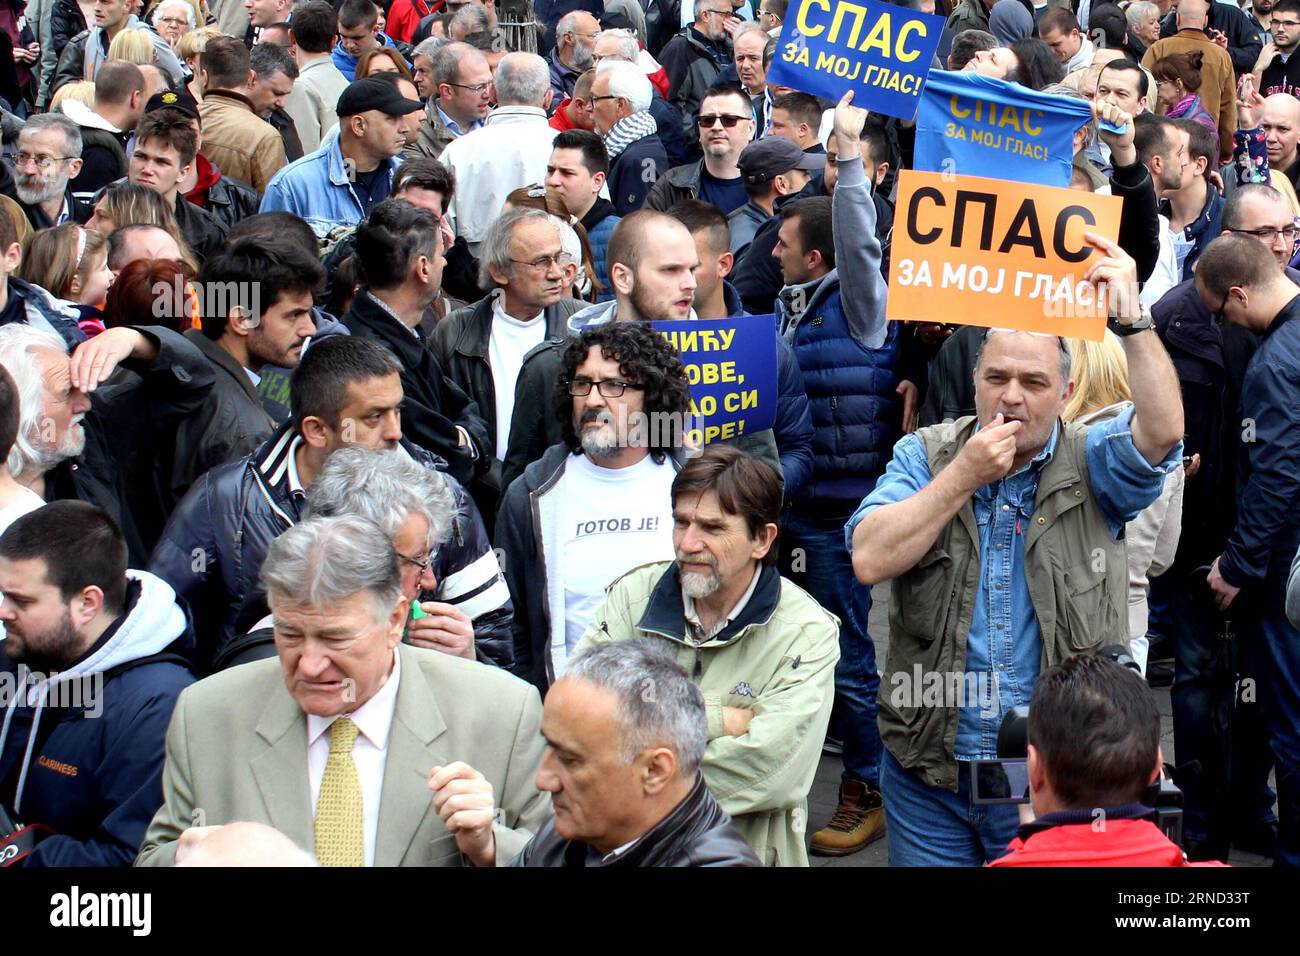 (160430) -- BELGRAD, 30. April 2016 -- Ein Mann hält Ein Plakat mit der Aufschrift Save My Vote bei einem Protest vor der Wahlkommission der Republik gegen mutmaßlichen Stimmendiebstahl bei den Wahlen am 24. April in Belgrad, Serbien, am 30. April 2016. Mehrere tausend Anhänger der Oppositionsparteien protestierten am Samstag gegen den angeblichen Stimmendiebstahl bei den Parlamentswahlen am 24. April durch die Koalition um die Siegerpartei Progressive, die diese Behauptungen kategorisch widerlegte. SERBIEN-BELGRAD-WAHLEN-PROTEST NemanjaxCabric PUBLICATIONxNOTxINxCHN 160430 Belgrad April 30 2016 a Ma Stockfoto